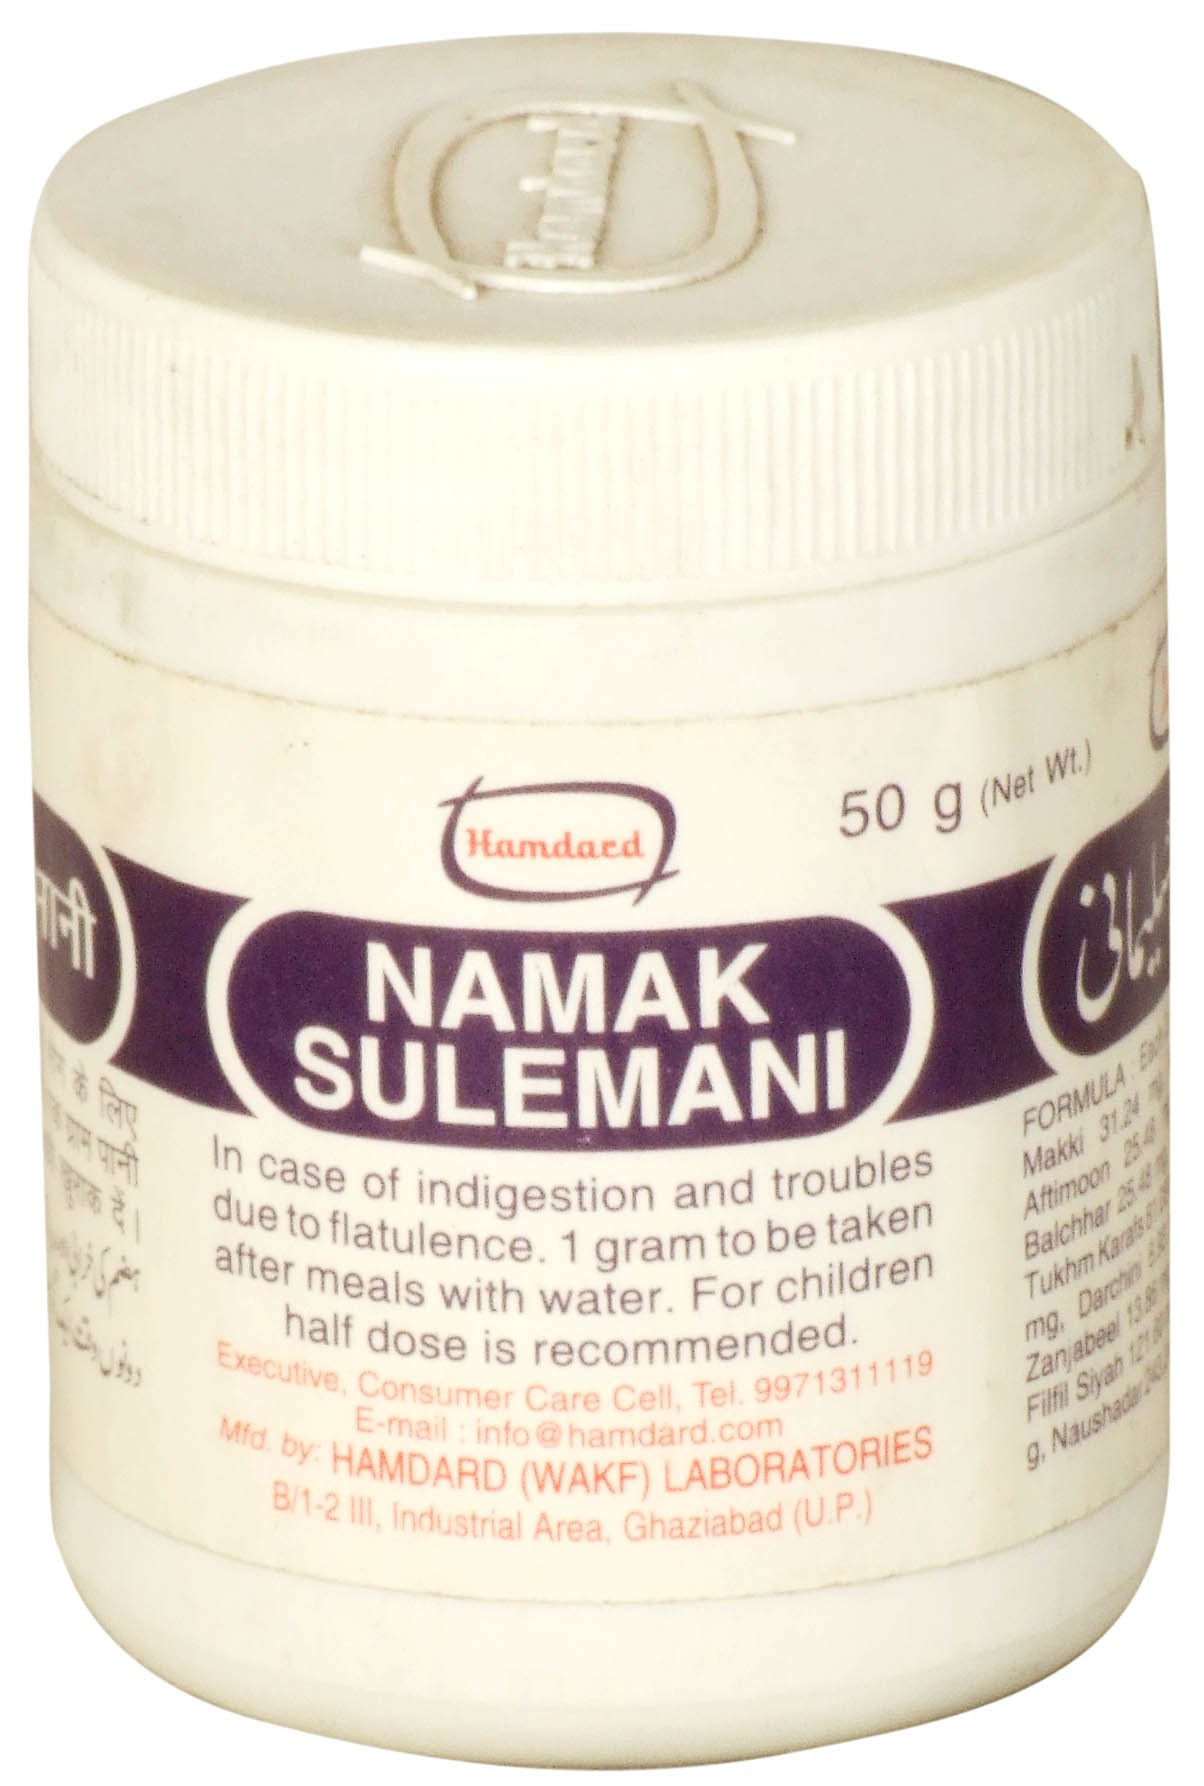 Namak Sulemani - book cover